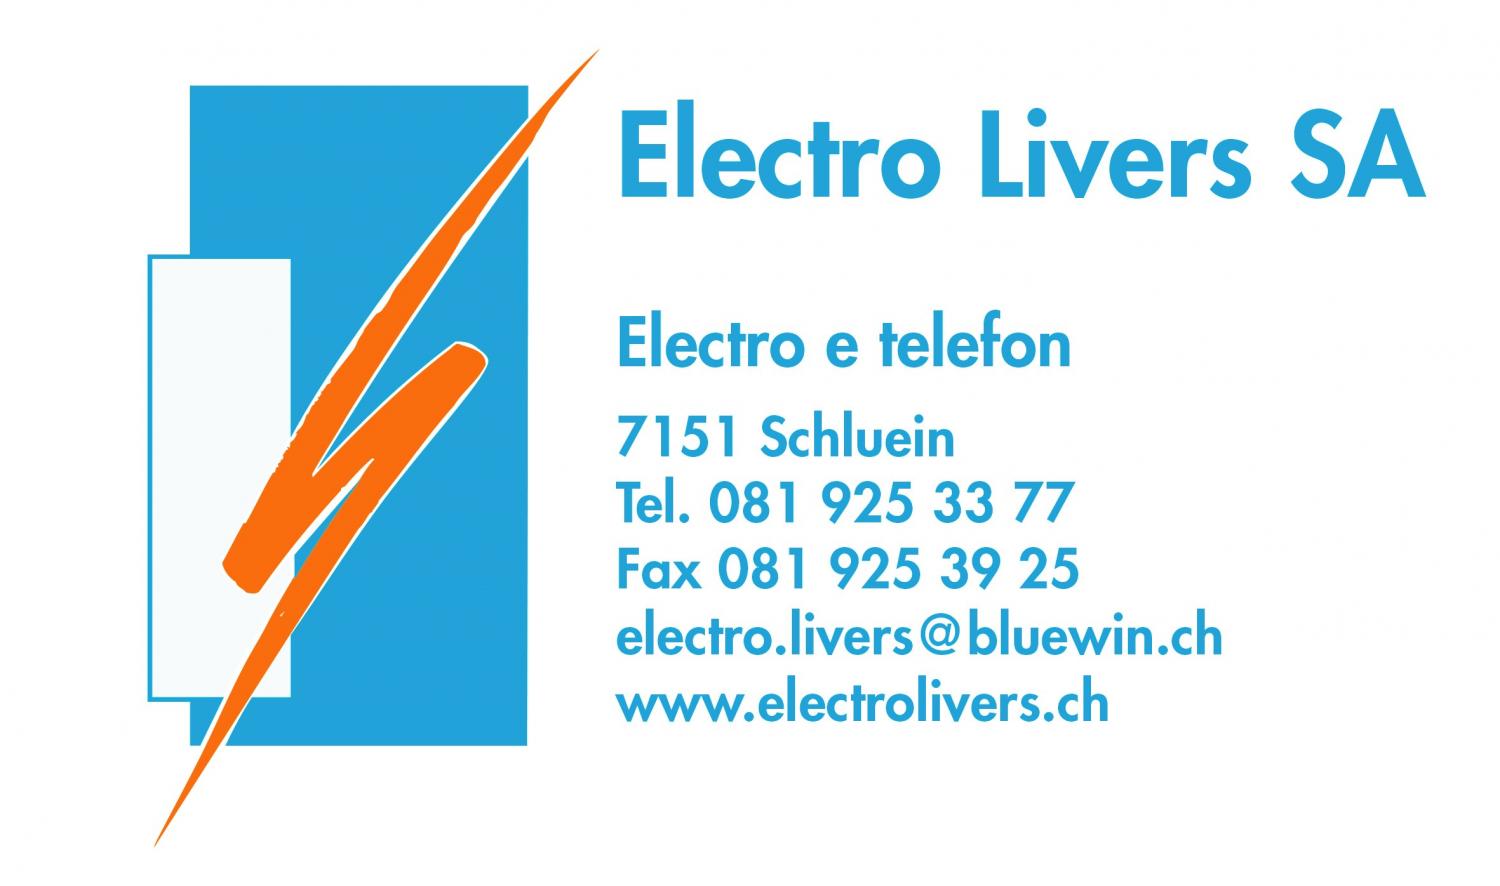 Electro Livers SA